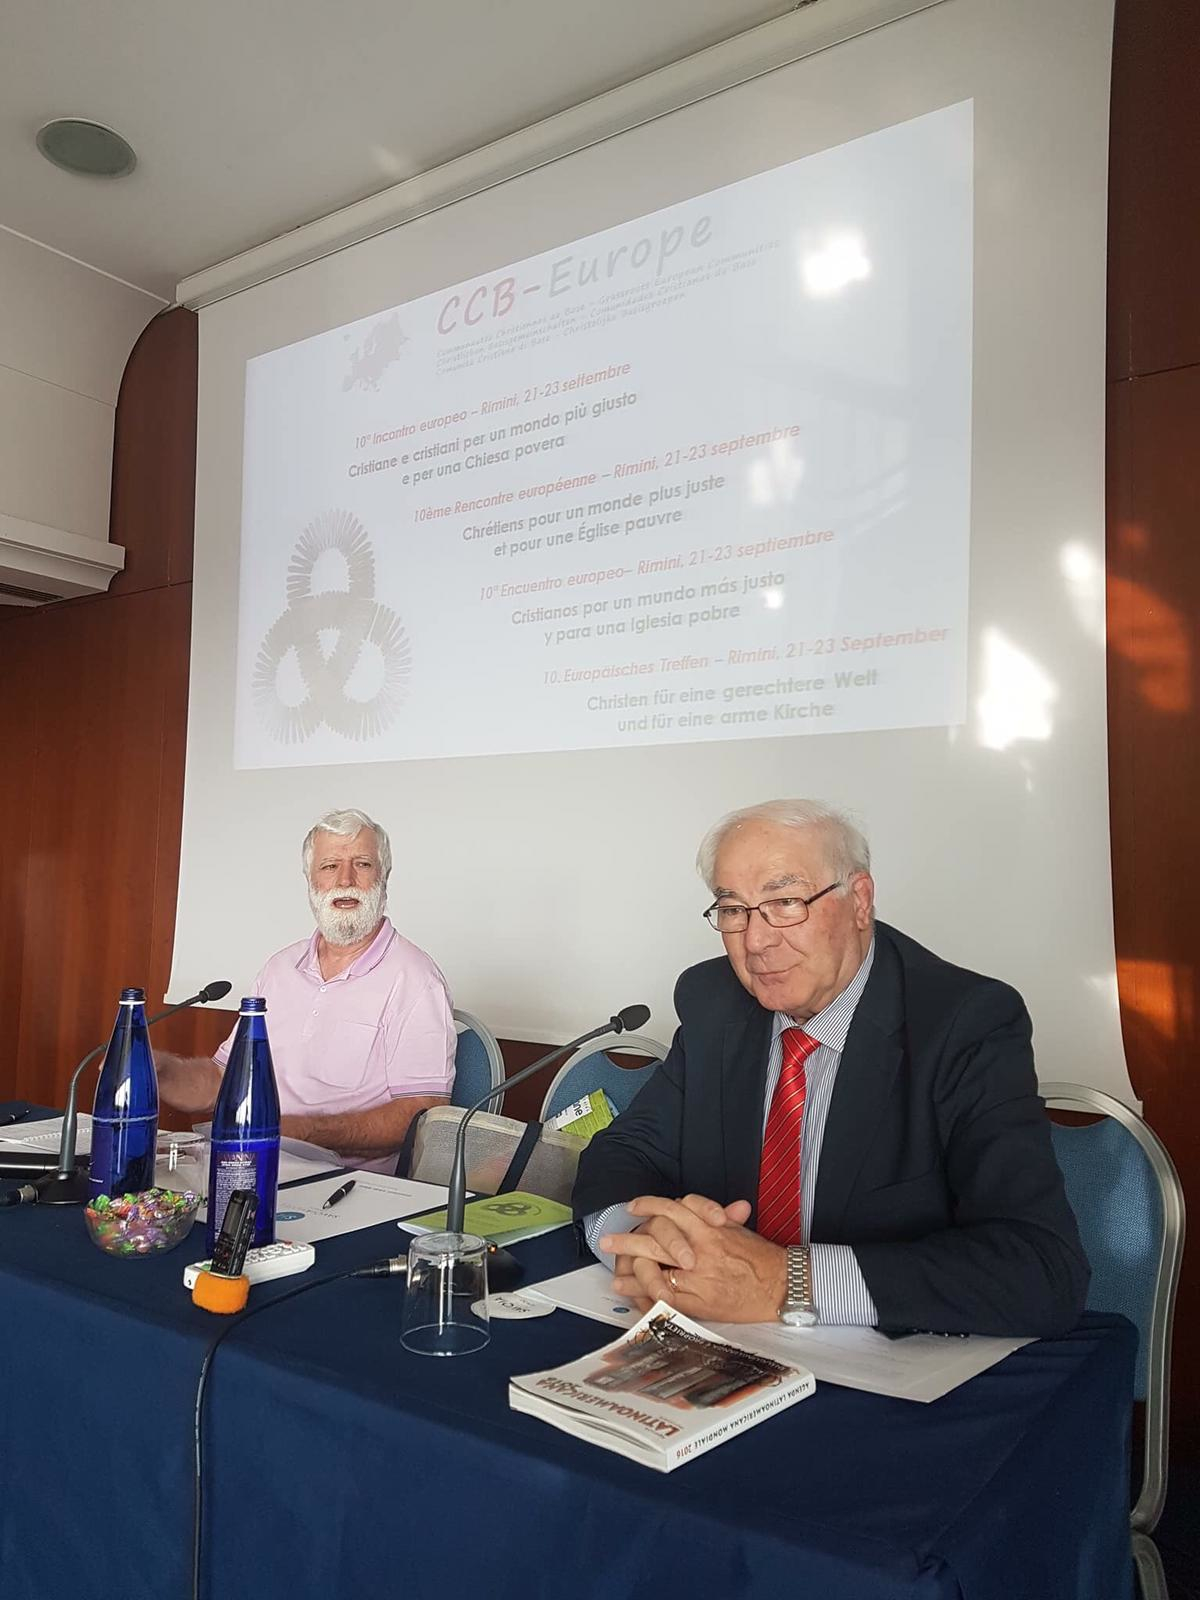 Massimiliano Tosato Koordinator der Europ. Basisgemeinden und Prof. Riccardo Petrella Vortrag Wege zur Bekämpfung einer immer ungerechteren globalen Gesellschaft 